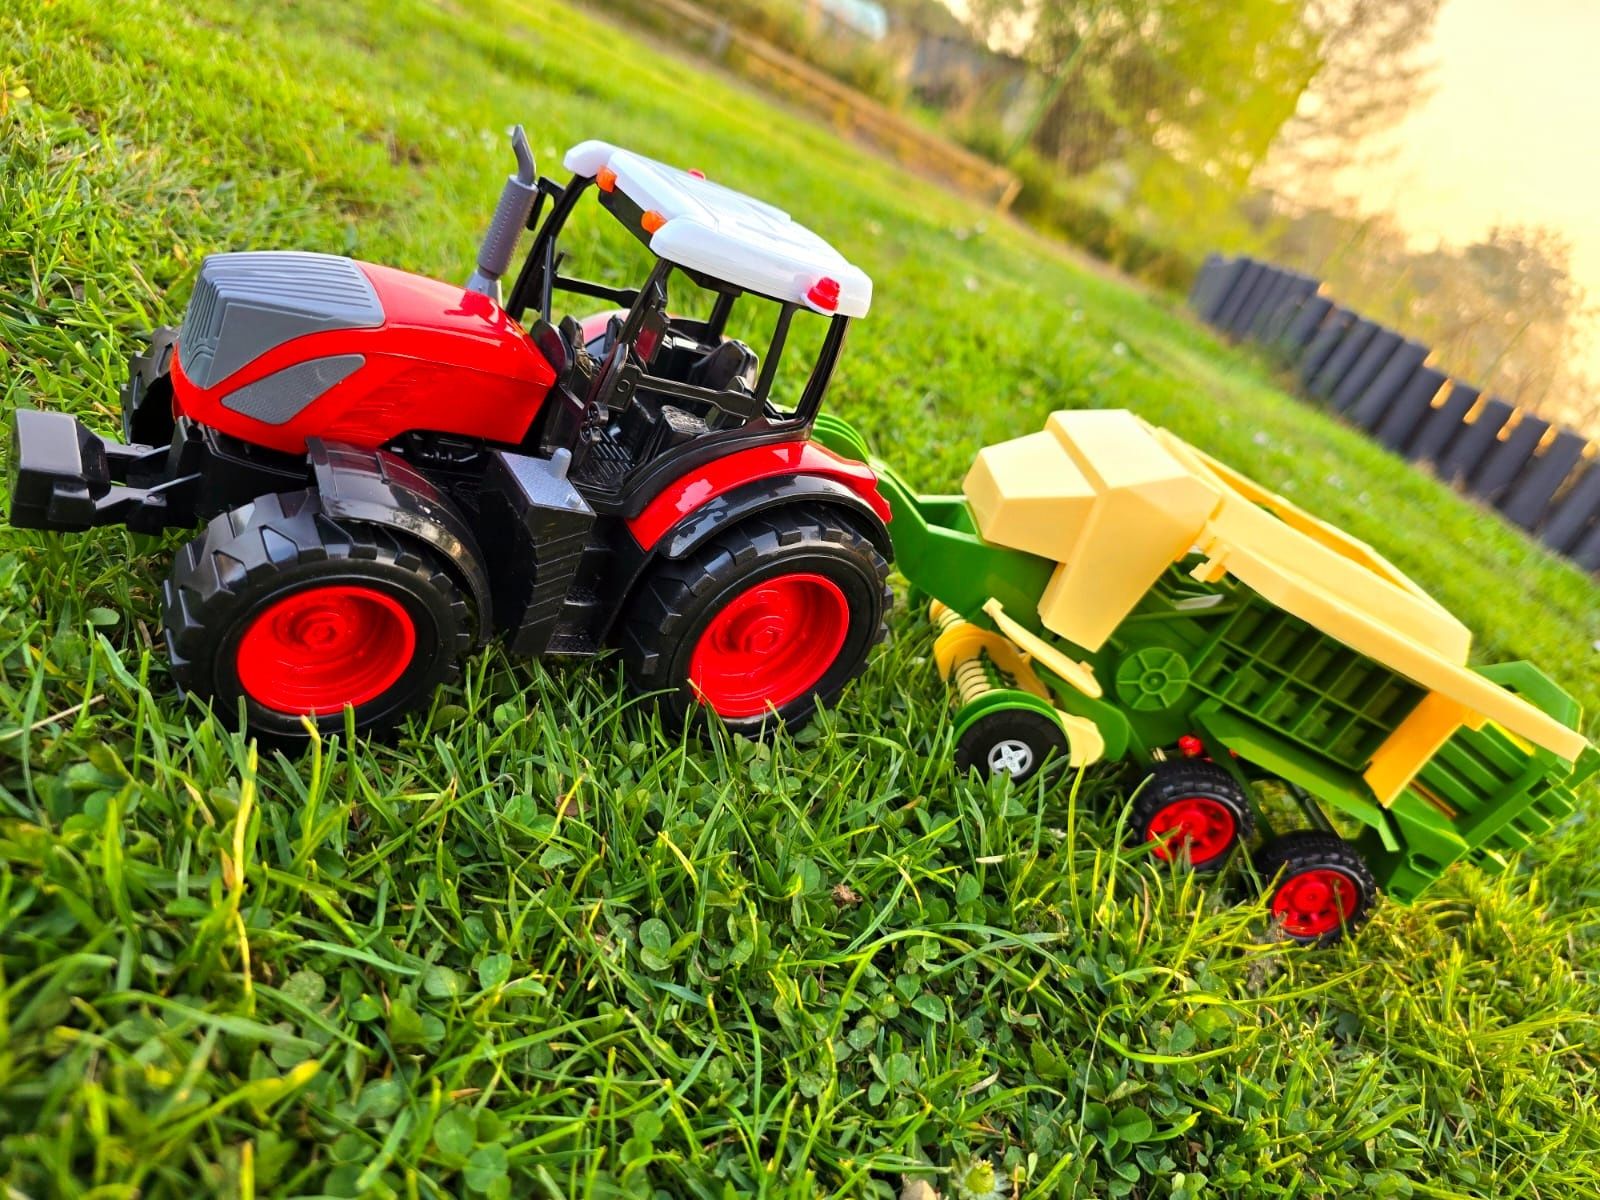 Nowy traktor z prasą do siana belarką czerwony - zabawki